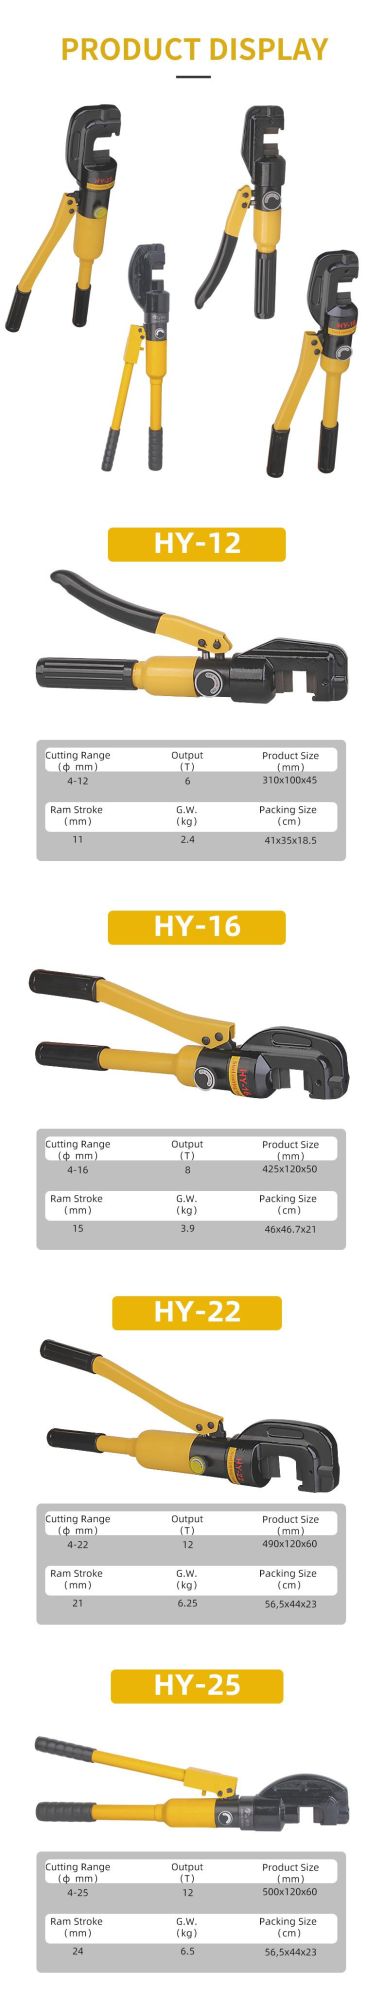 12t 22mm Hydraulic Rebar Cutting Tool, Hydraulic Power Tools (HY-22)